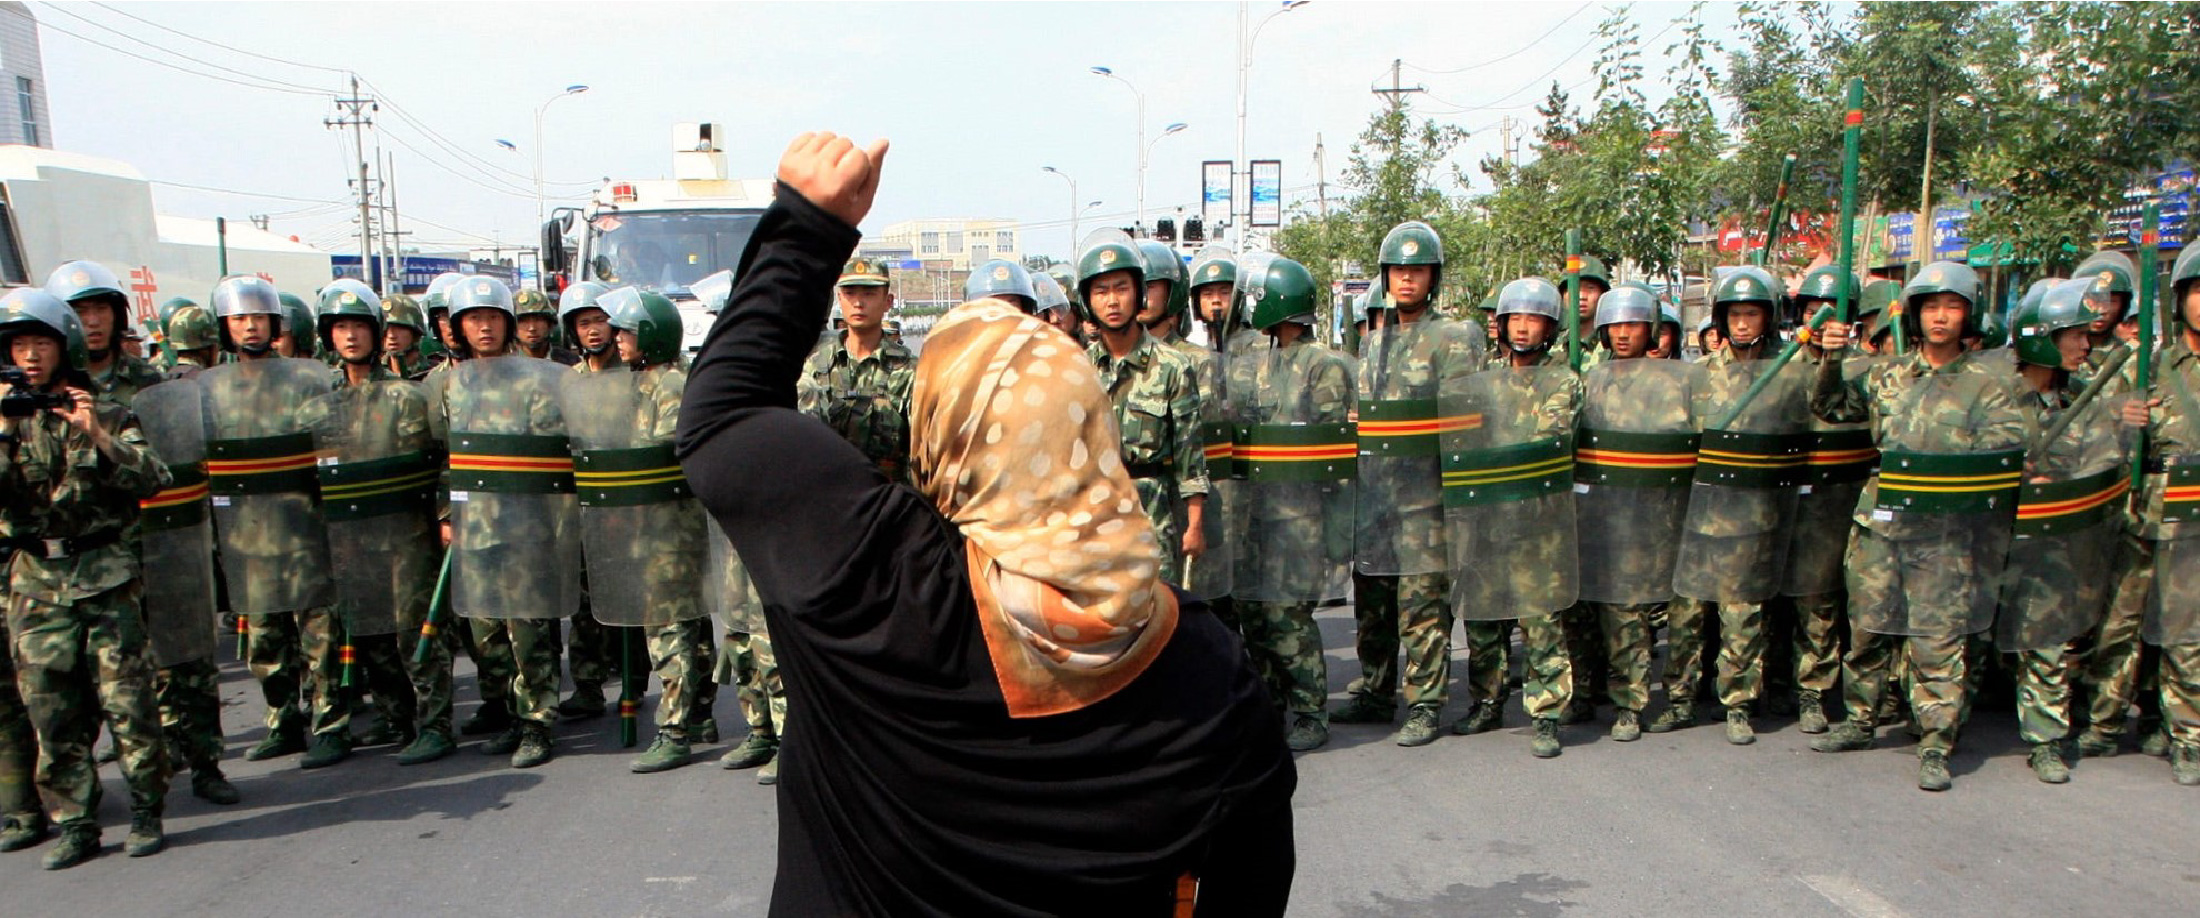 İnsan Haklarının Unutulduğu Yer: Doğu Türkistan